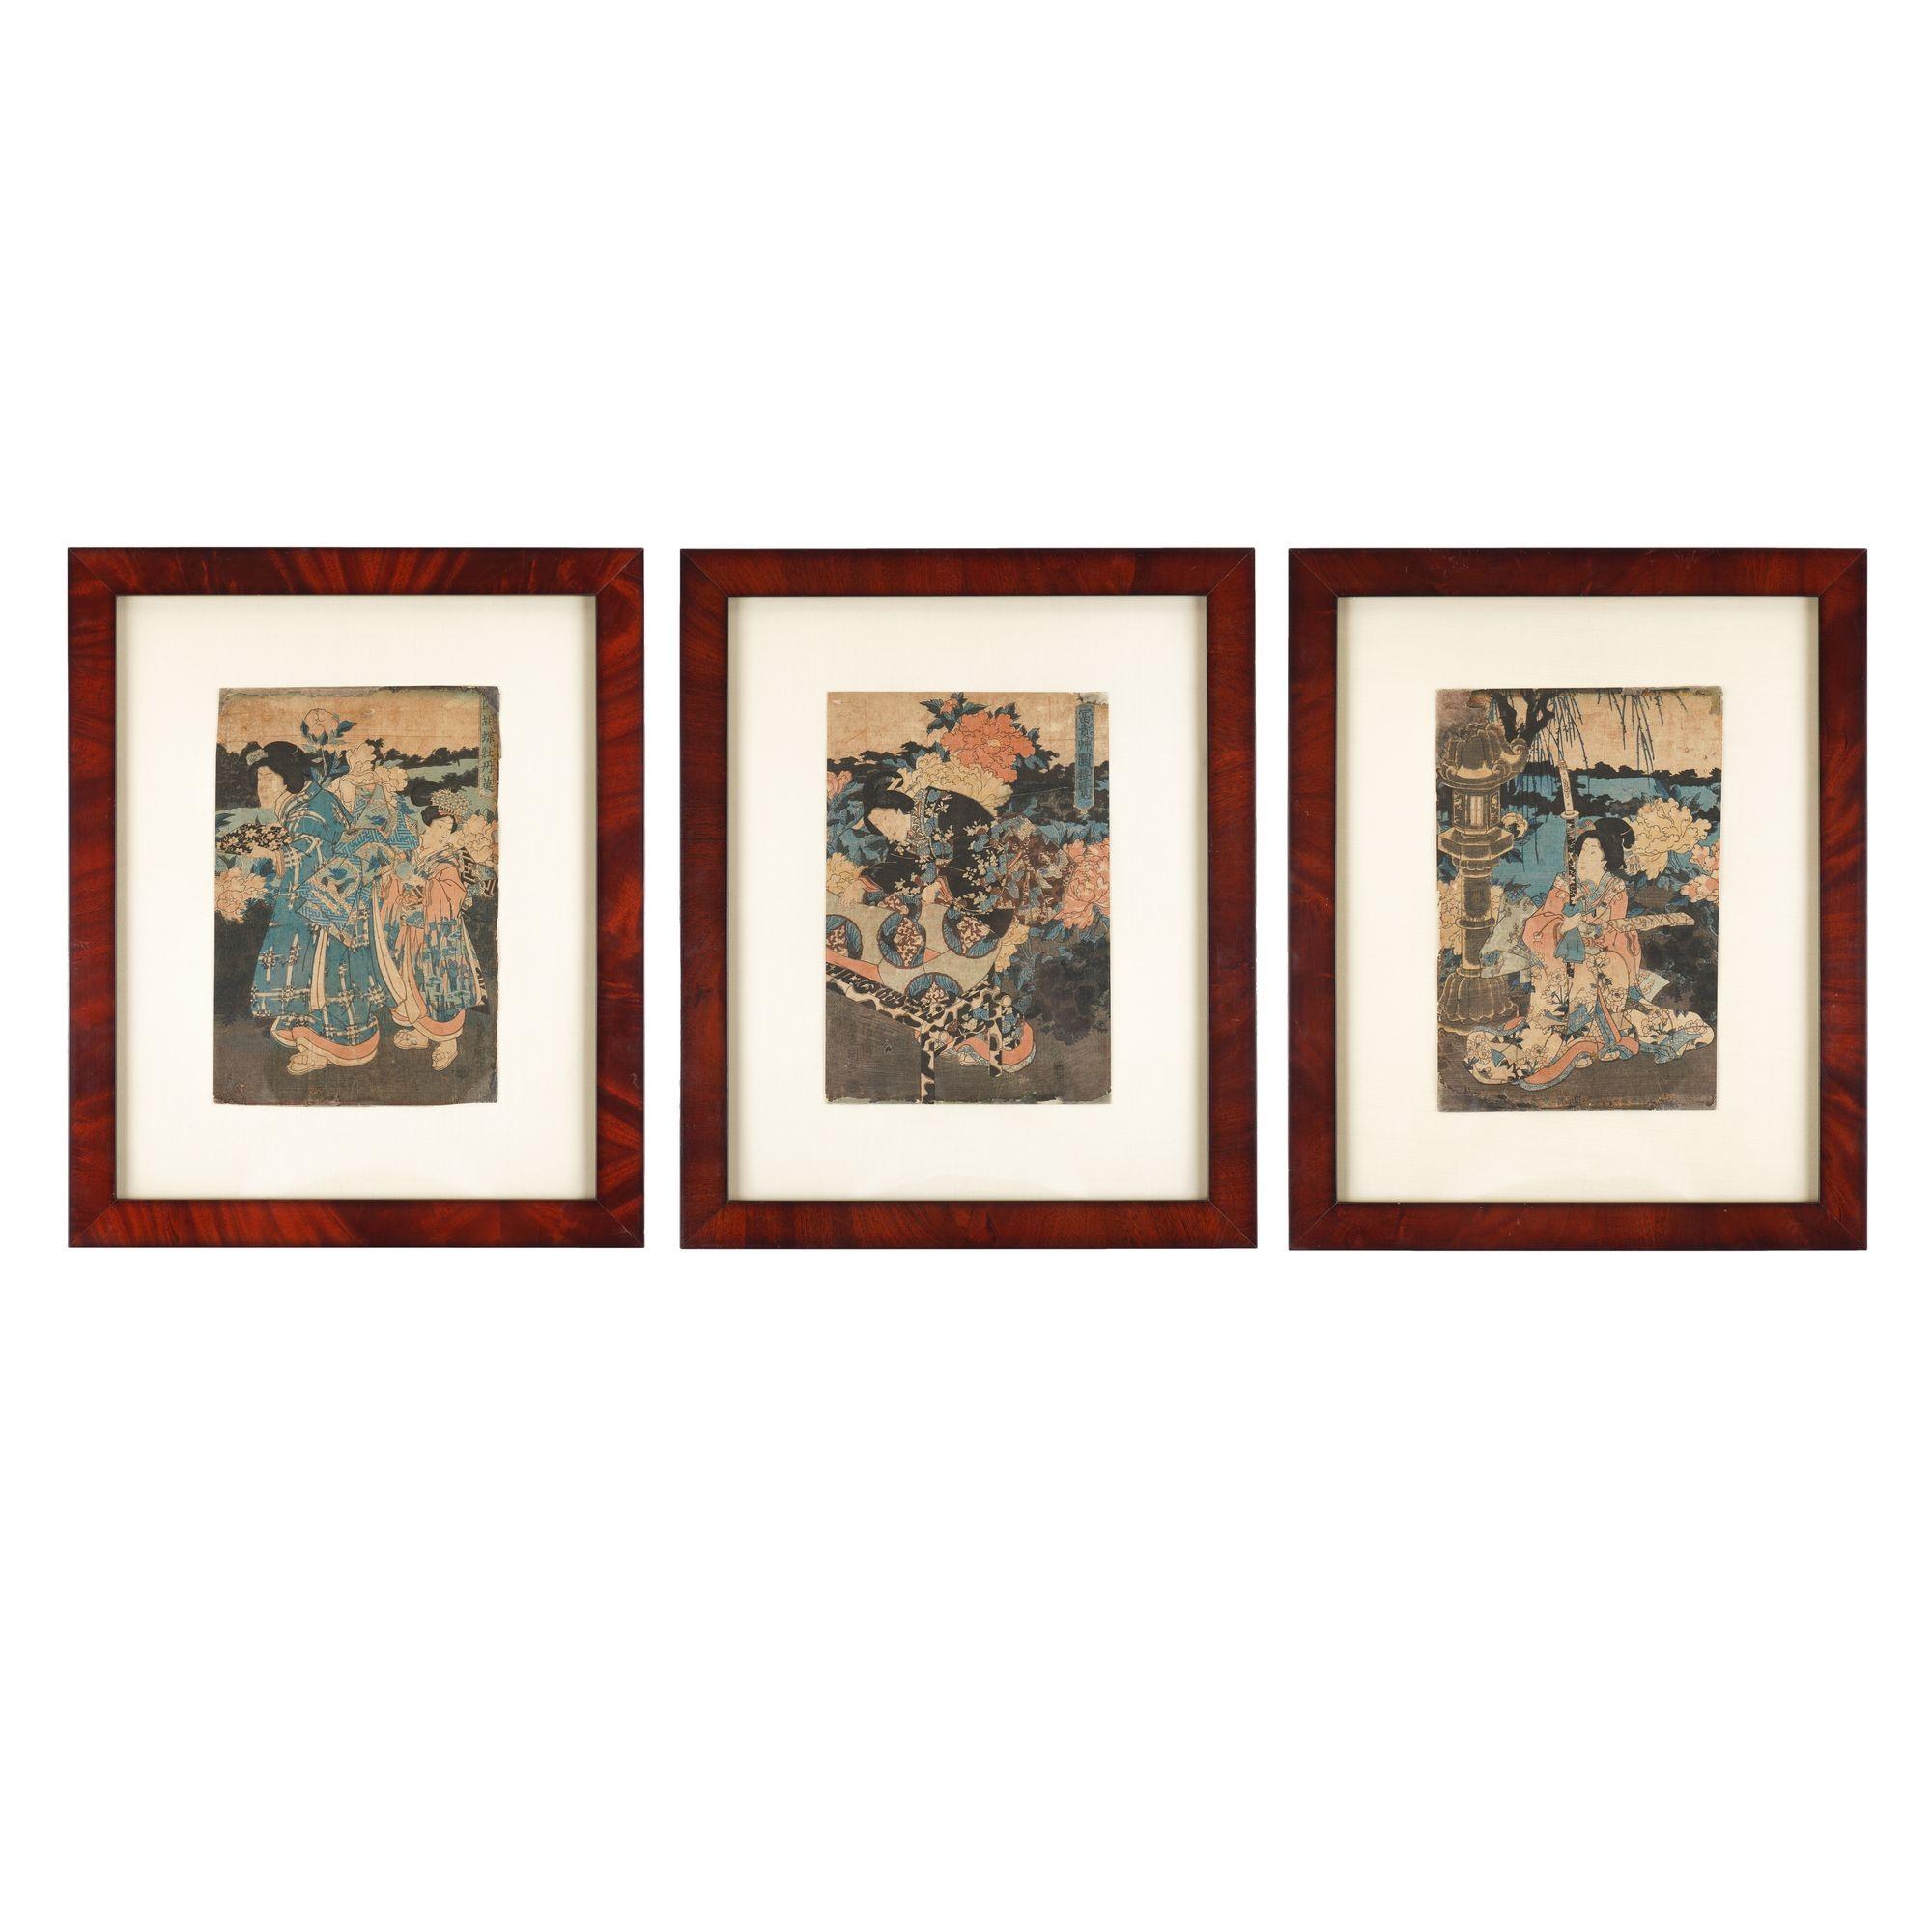 Japanisches Holzschnitt-Triptychon von Utagawa Toyokuni, gedruckt auf Reispapier im Ukiyo-e-Stil. Diese reich gemusterten Bilder stellen Kabuki-Theaterschauspieler dar. Alle Werke sind mit Seidenmatten unter UV-Acryl archivtauglich aufgezogen und in